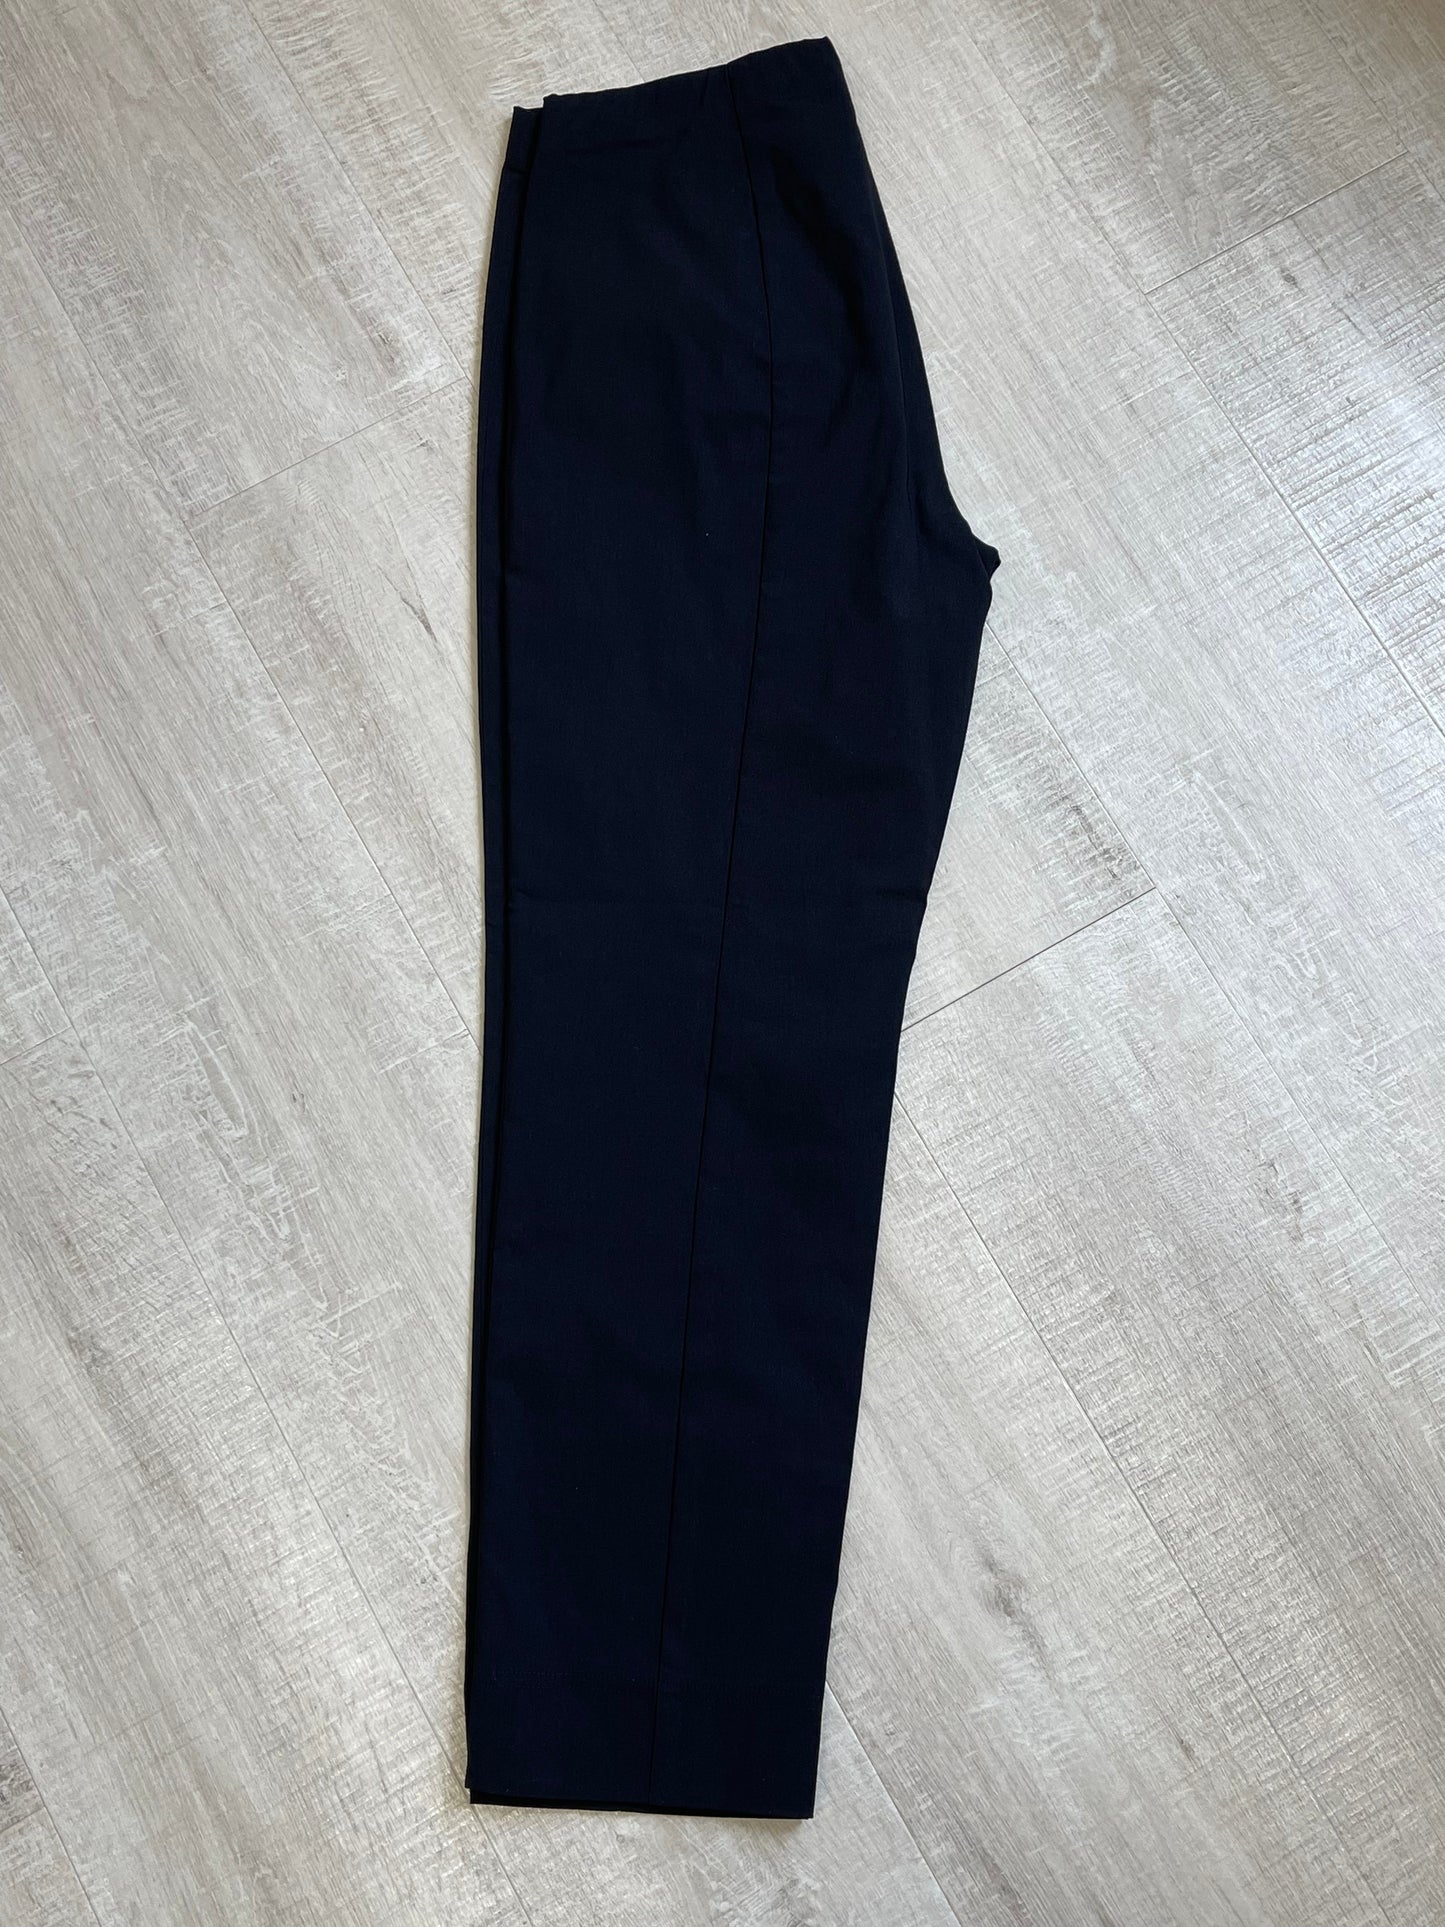 Robell Marie black full length trousers sizes 12-26